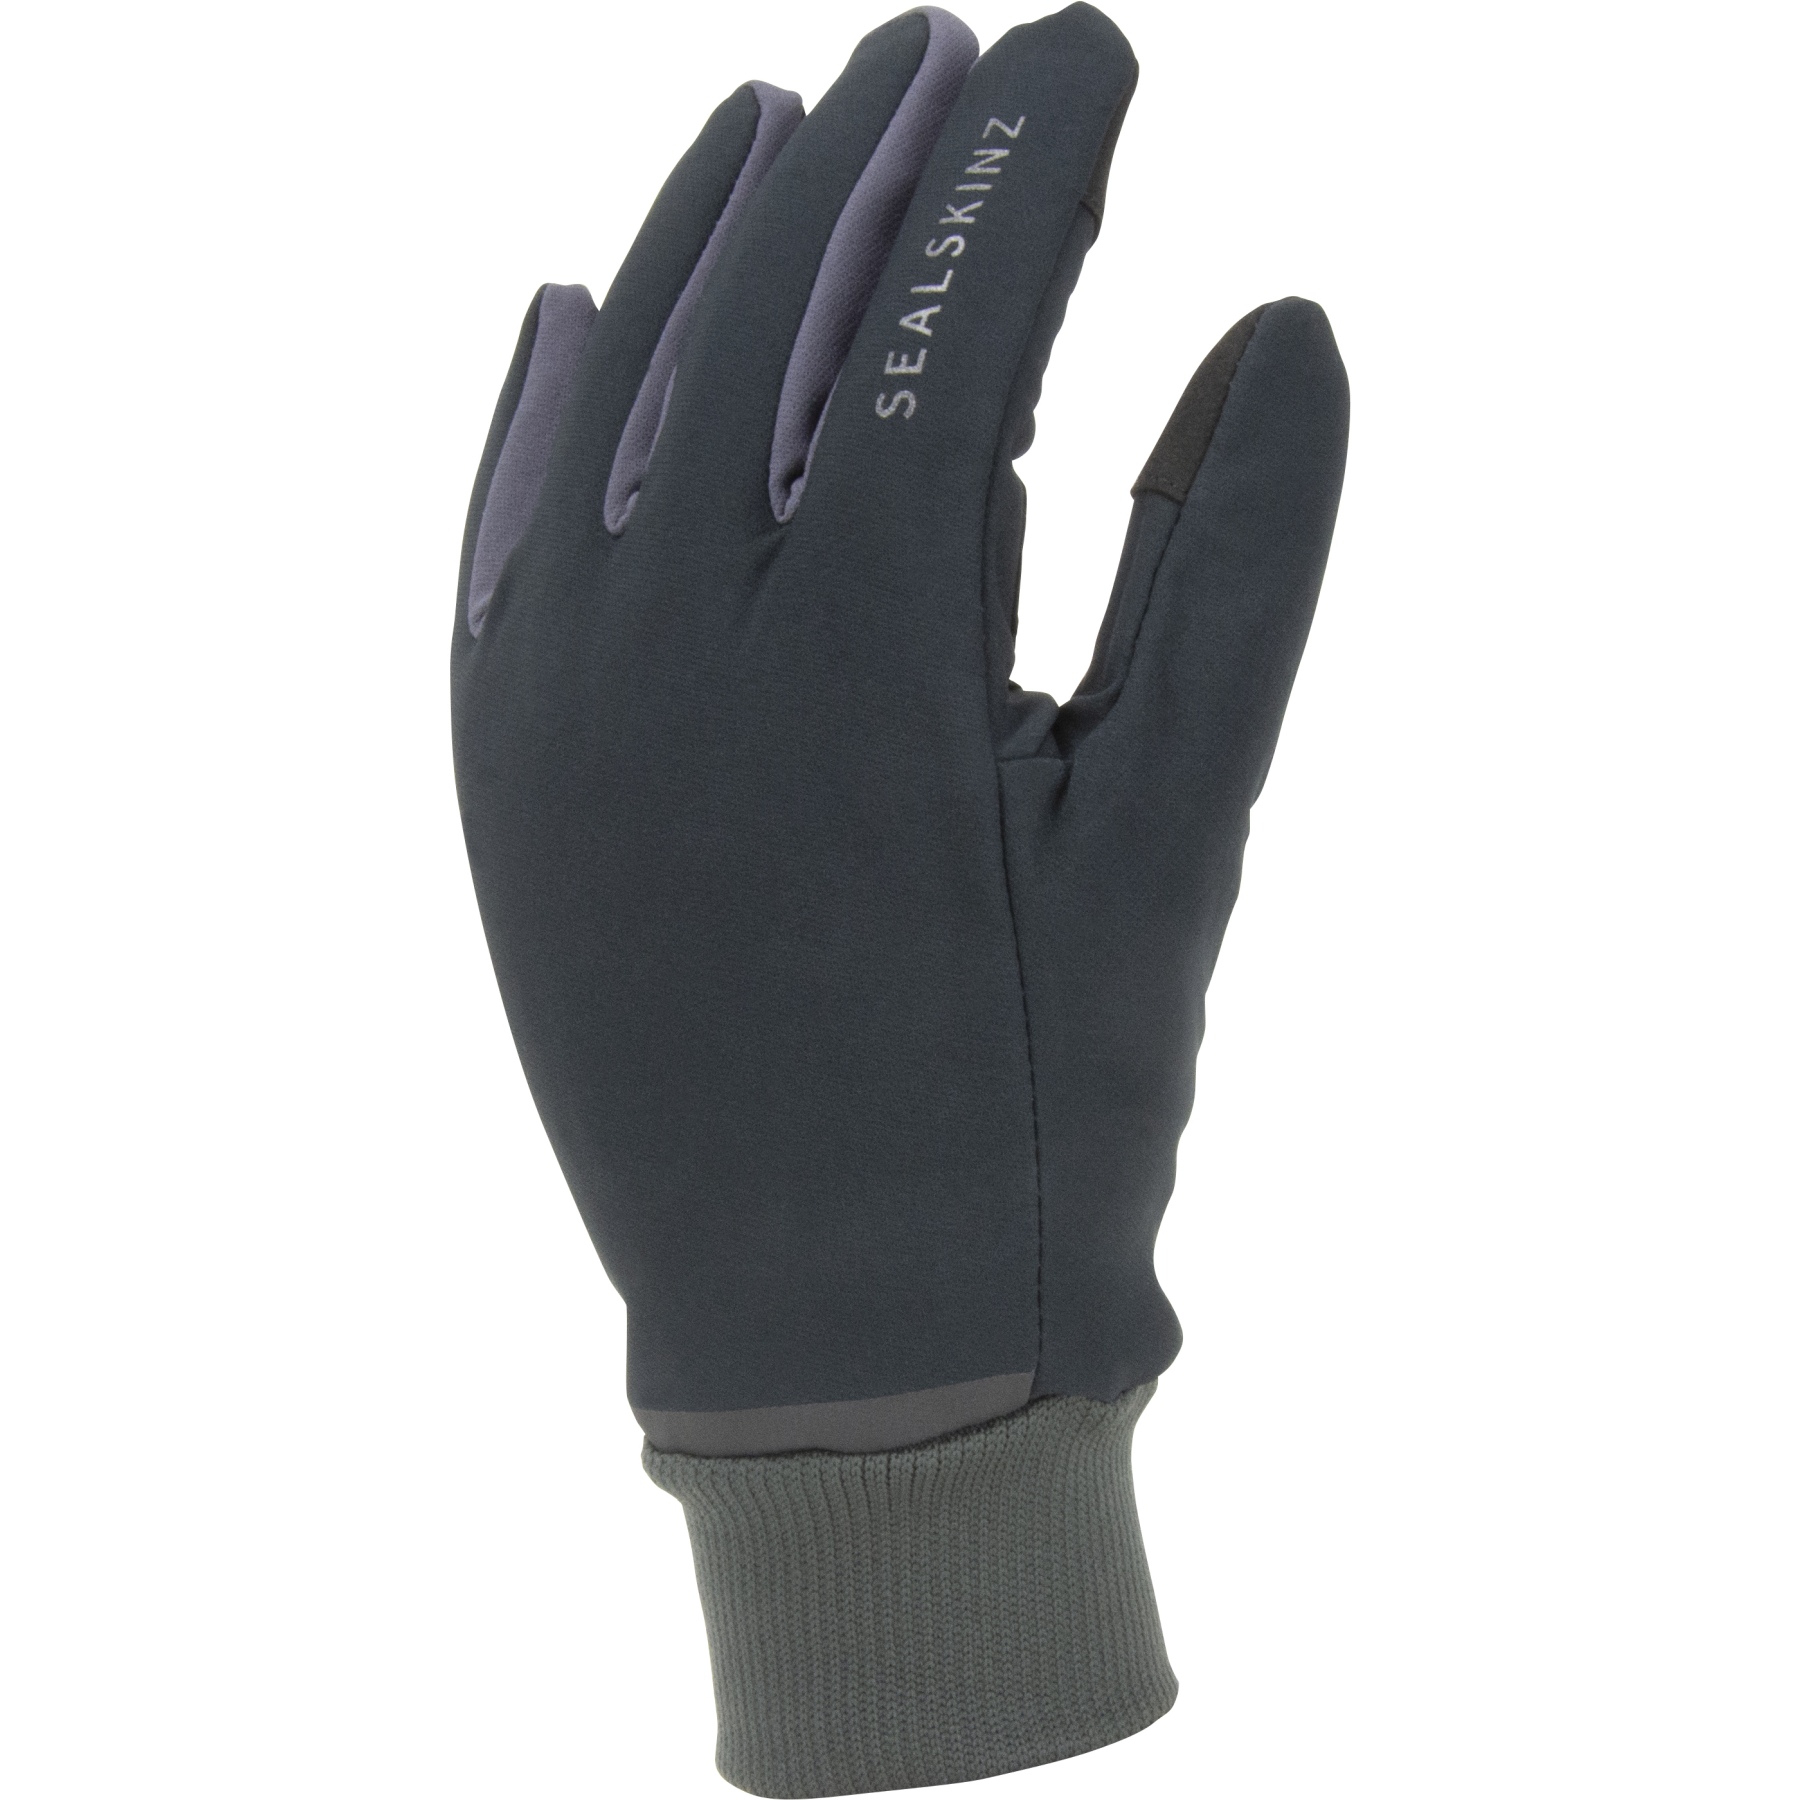 Produktbild von SealSkinz Gissing Wasserdichte, leichte Allwetter-Handschuhe mit Fusion Control™ - Schwarz/Grau